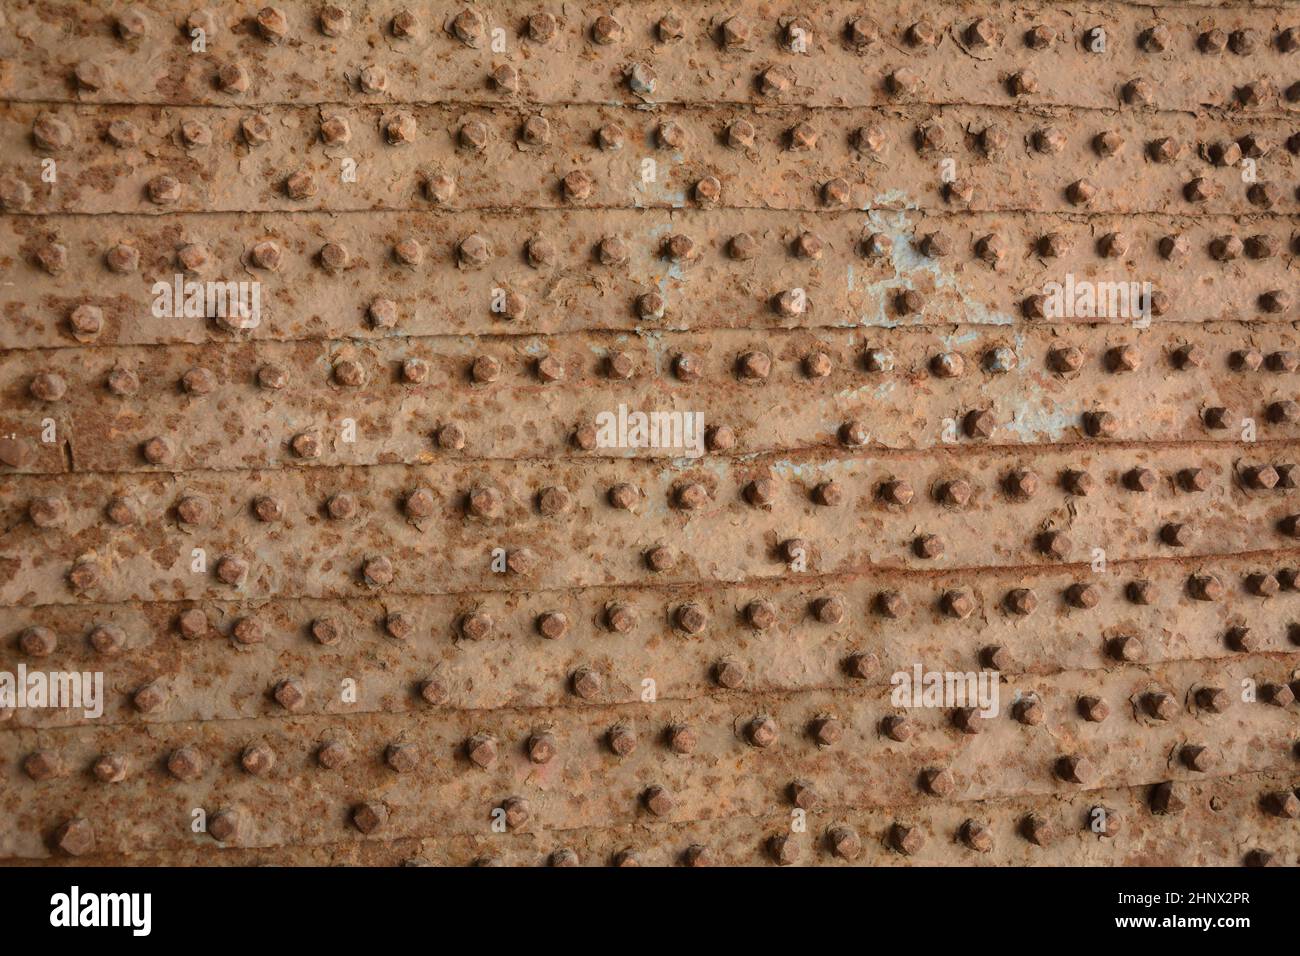 Parte de puertas de metal antiguas con detalles de patrones fundidos. Textura de la puerta antigua con remaches metálicos. Akko (Acre) Israel Foto de stock